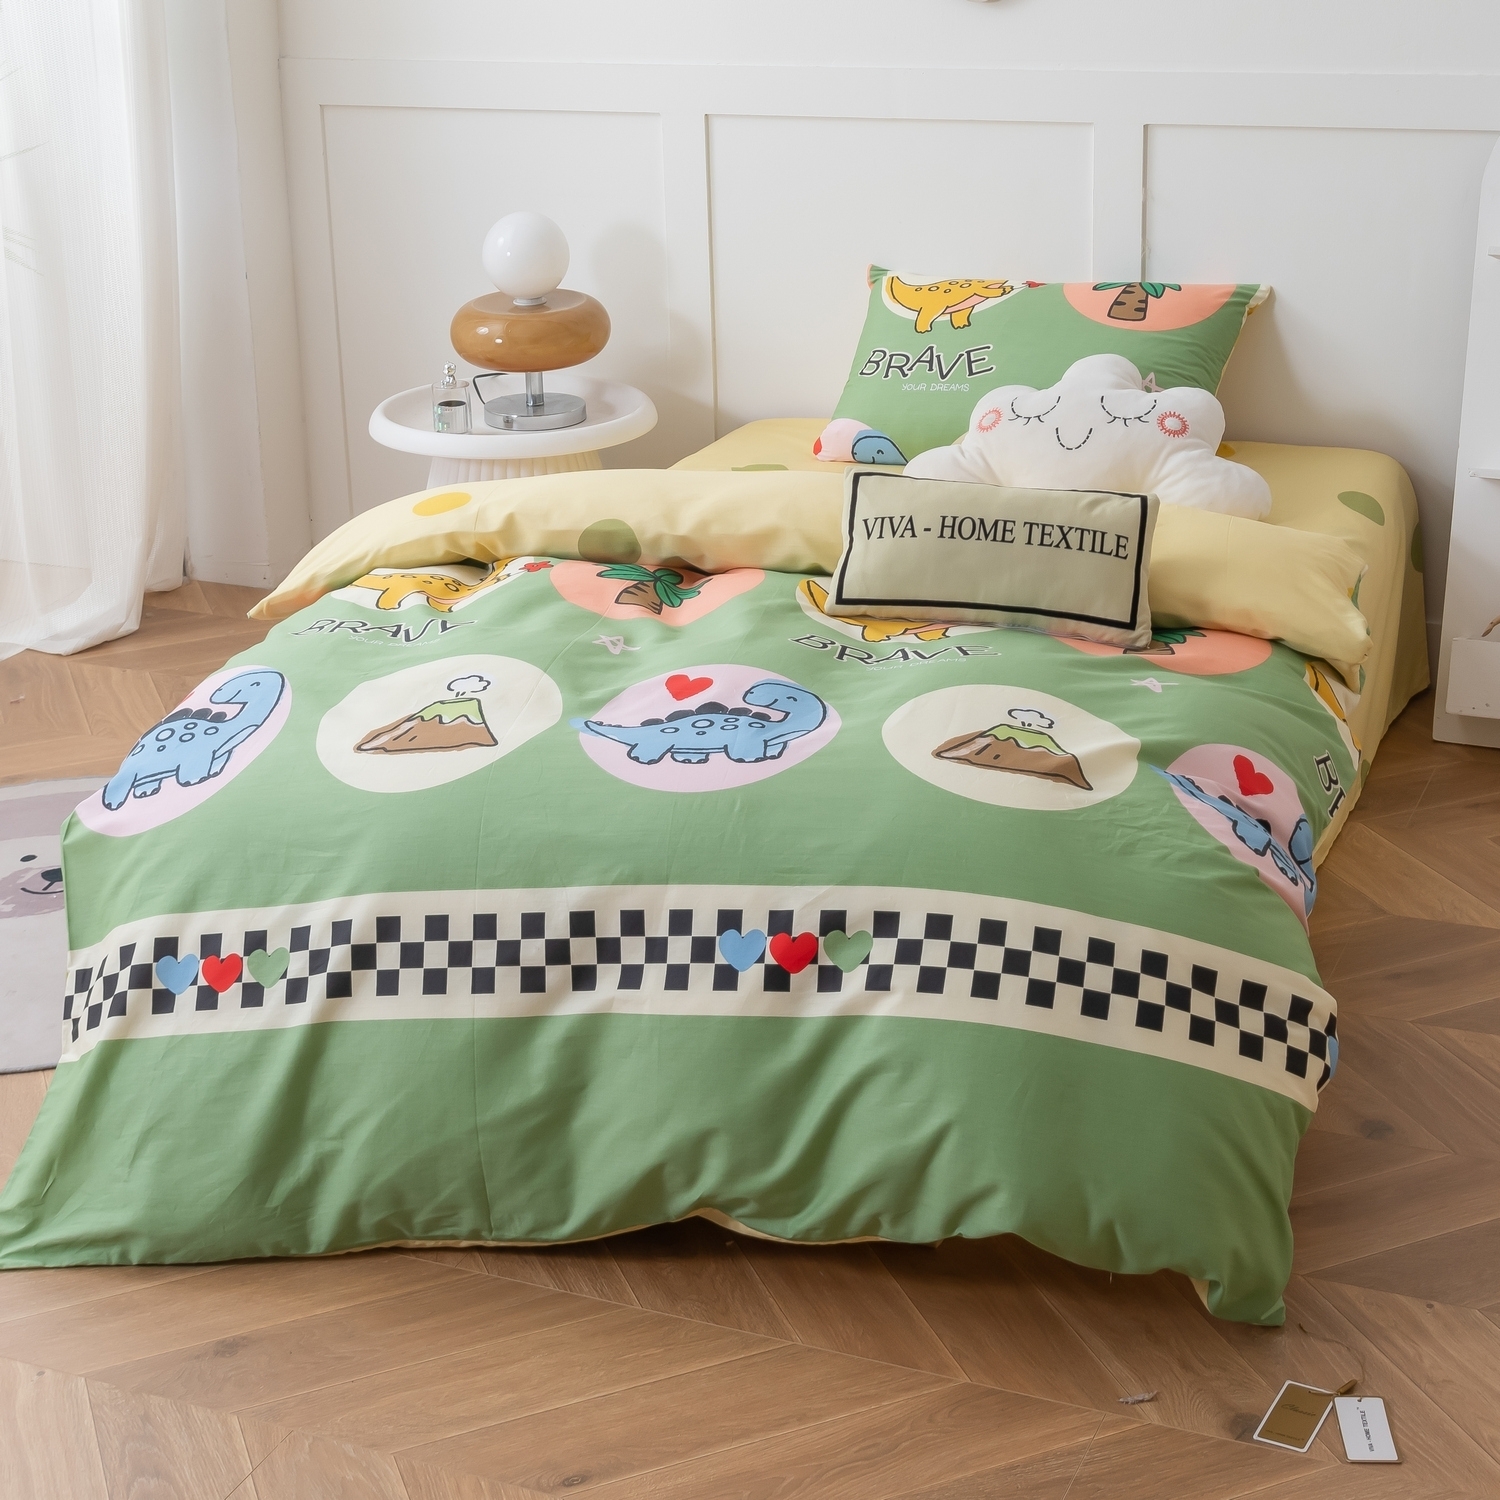 Комплект детского постельного белья Ситрейд  разноцветный CIT-1581440307 комплект постельного белья сатин люкс kids 100% хлопок ситрейд 15 спальный